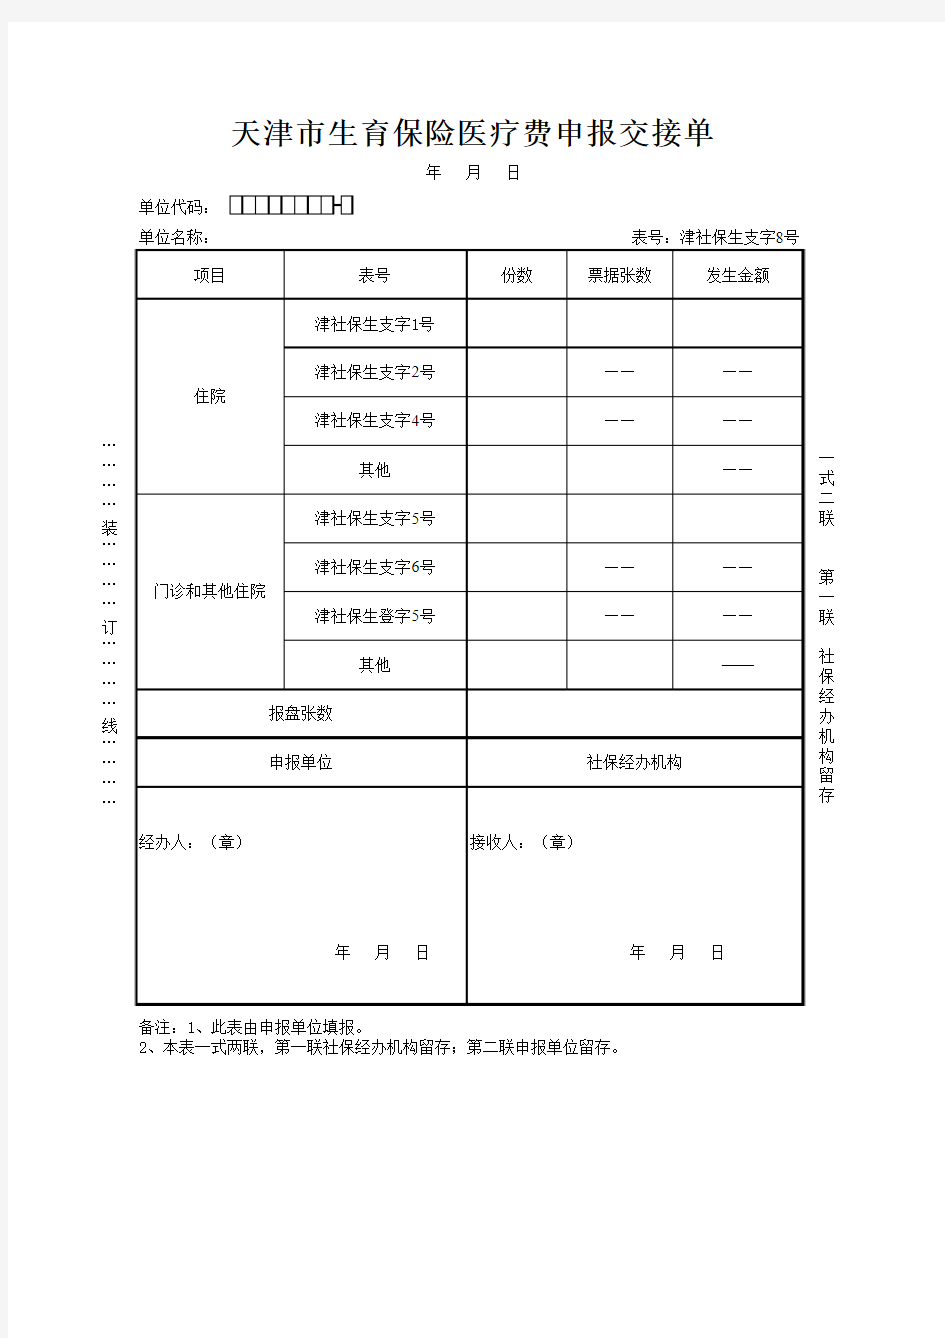 天津生育保险支字8号(医疗费申报交接单)